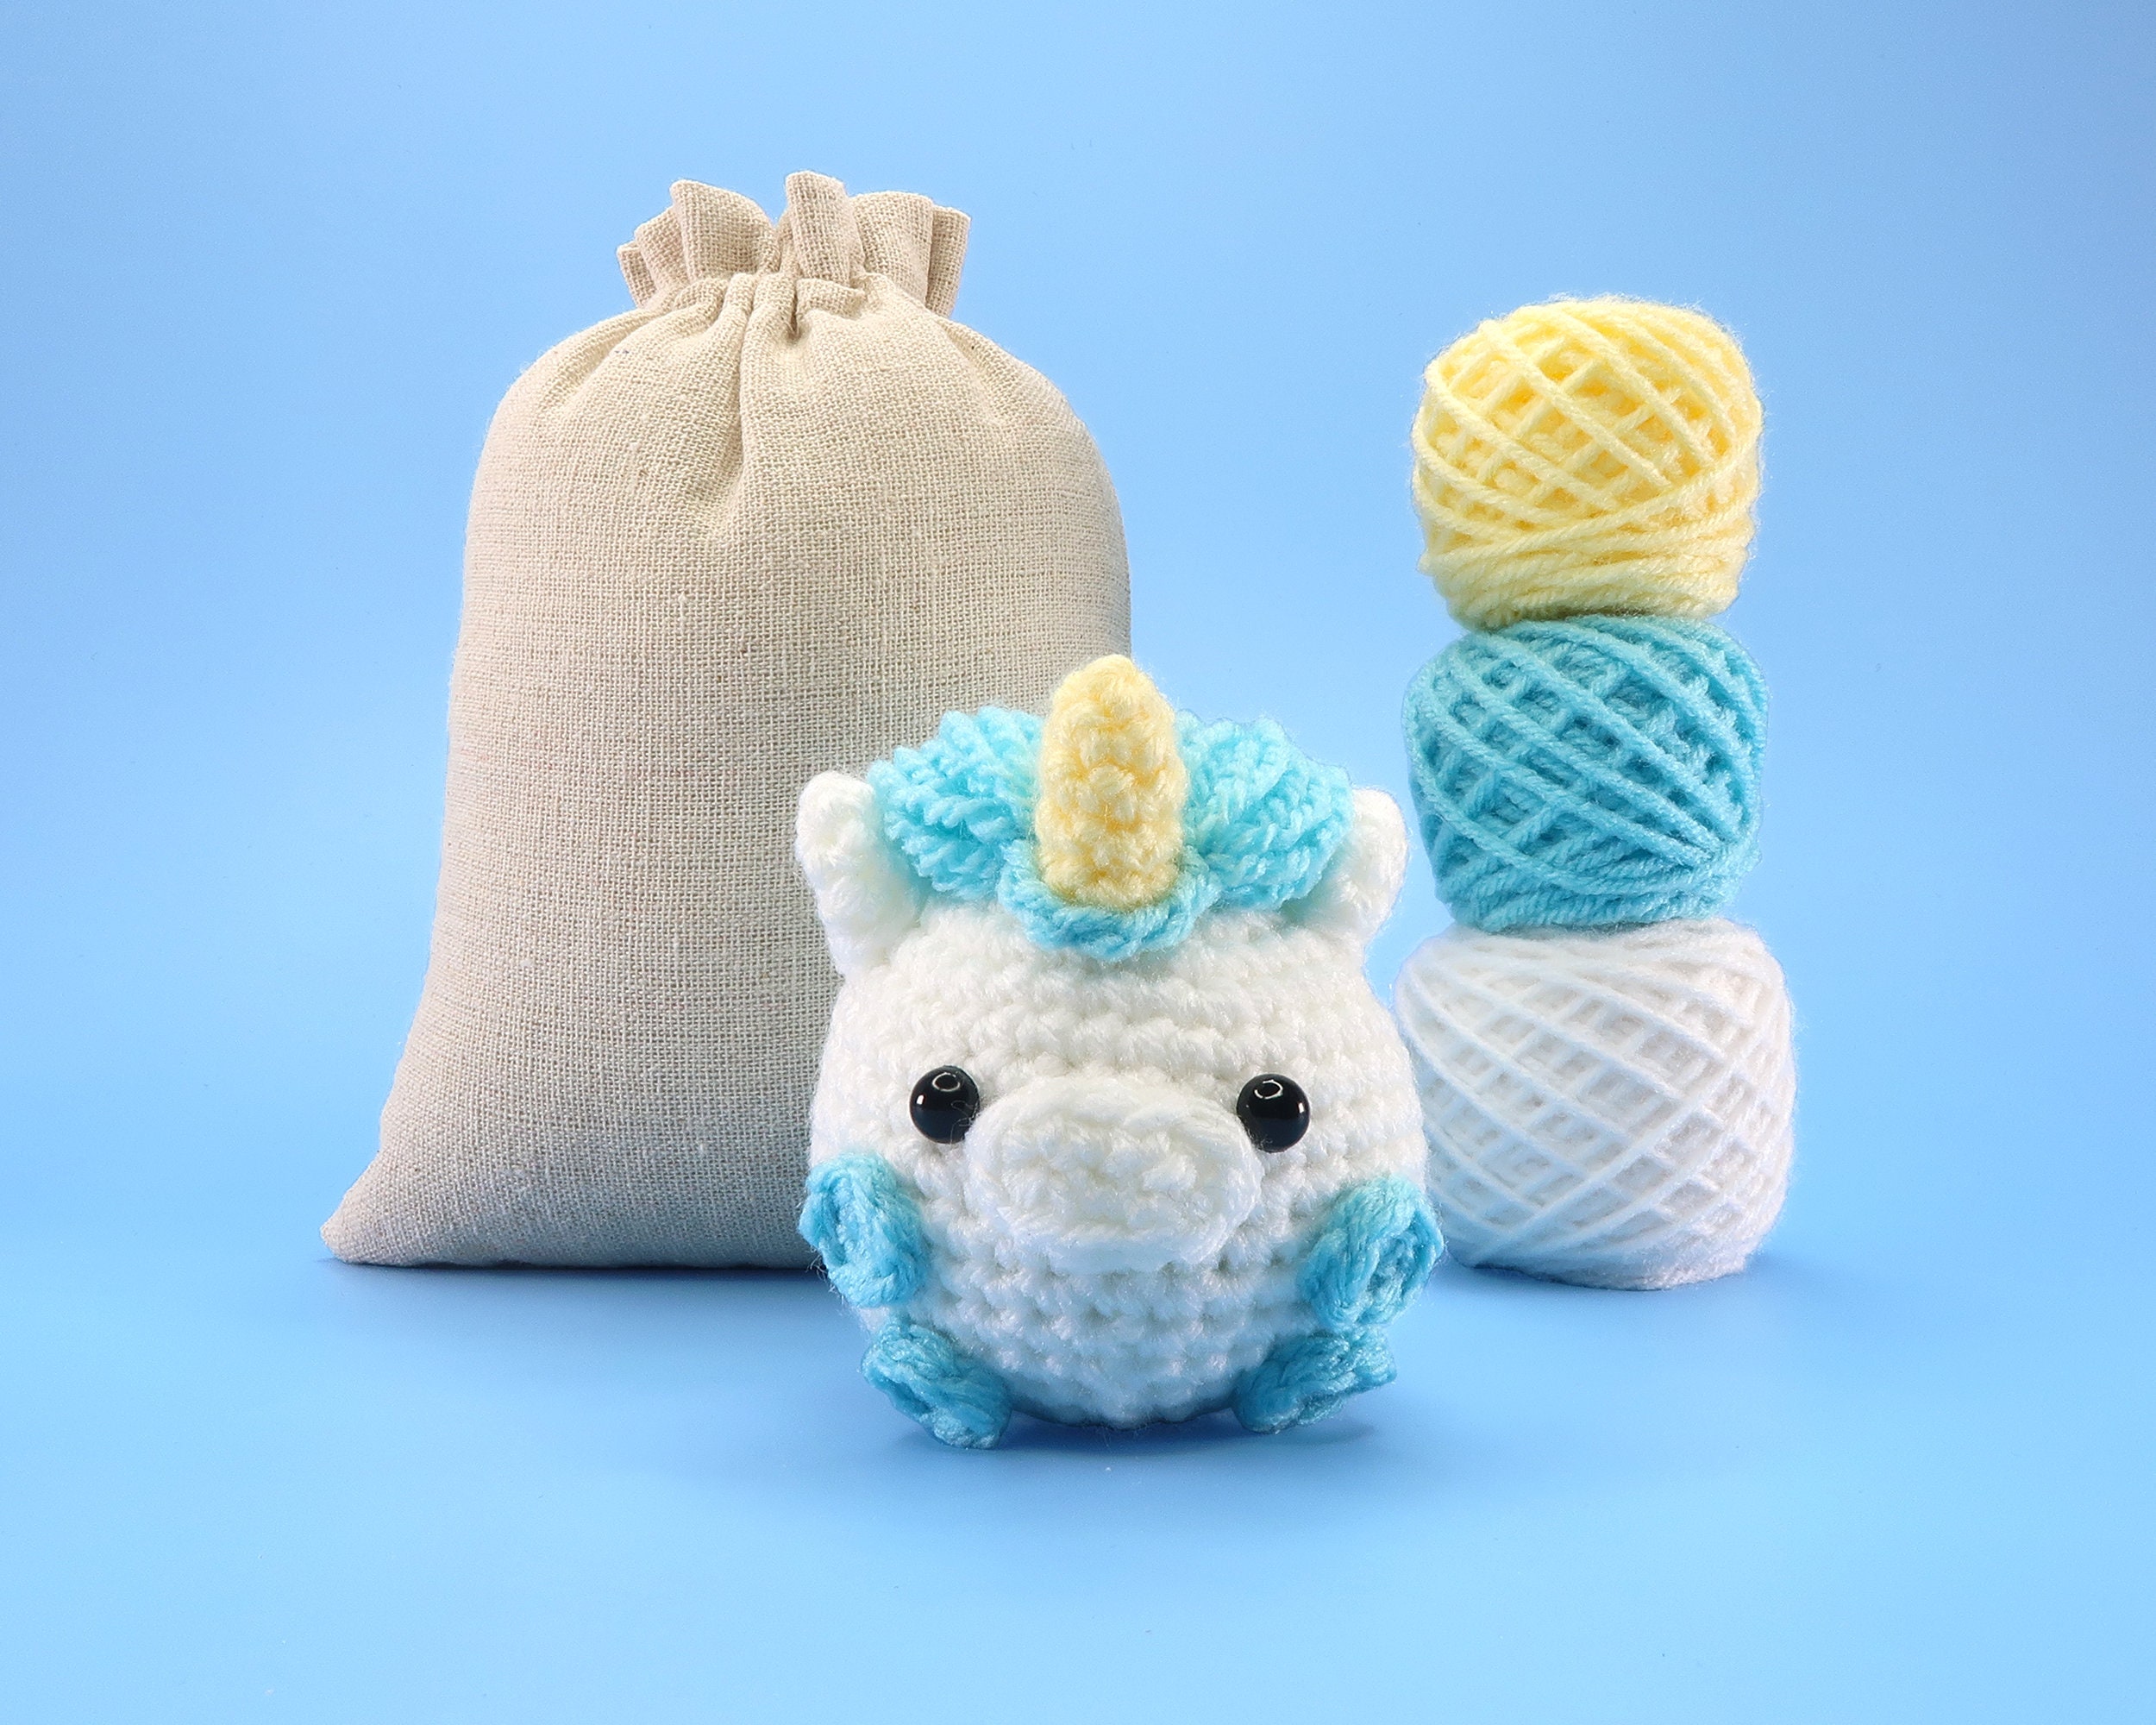 Moogan the Cow Crochet Kit Crochet Animals Kit Amigurumi Kit